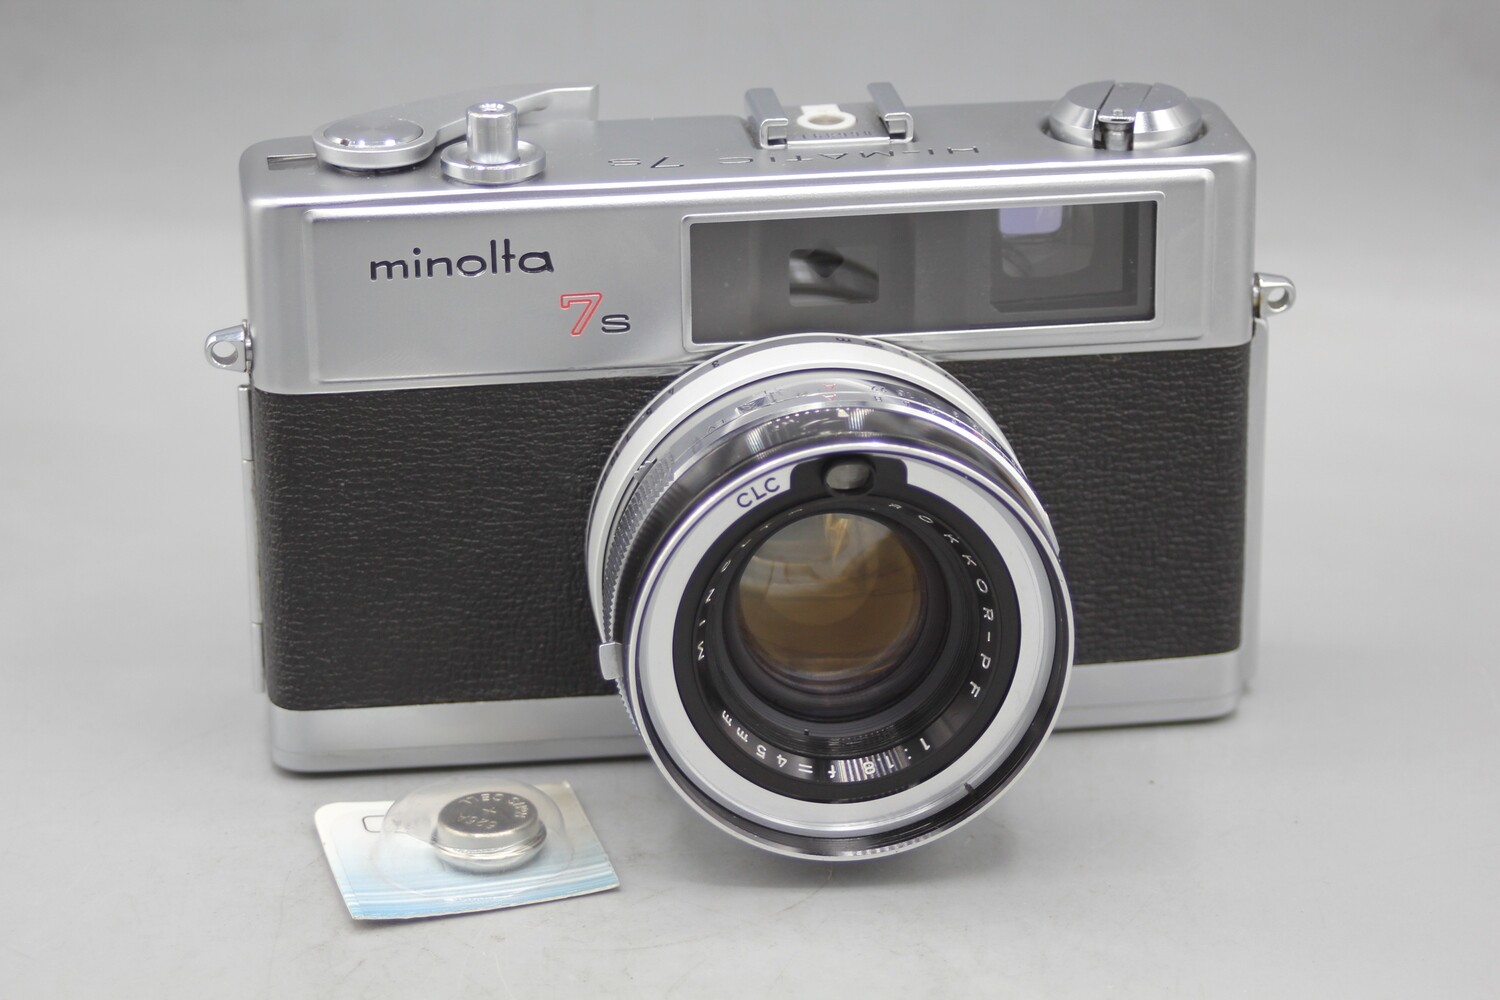 Minolta Hi-Matic 7s 35mm Rangefinder Camera Clad Seals Battery Tested